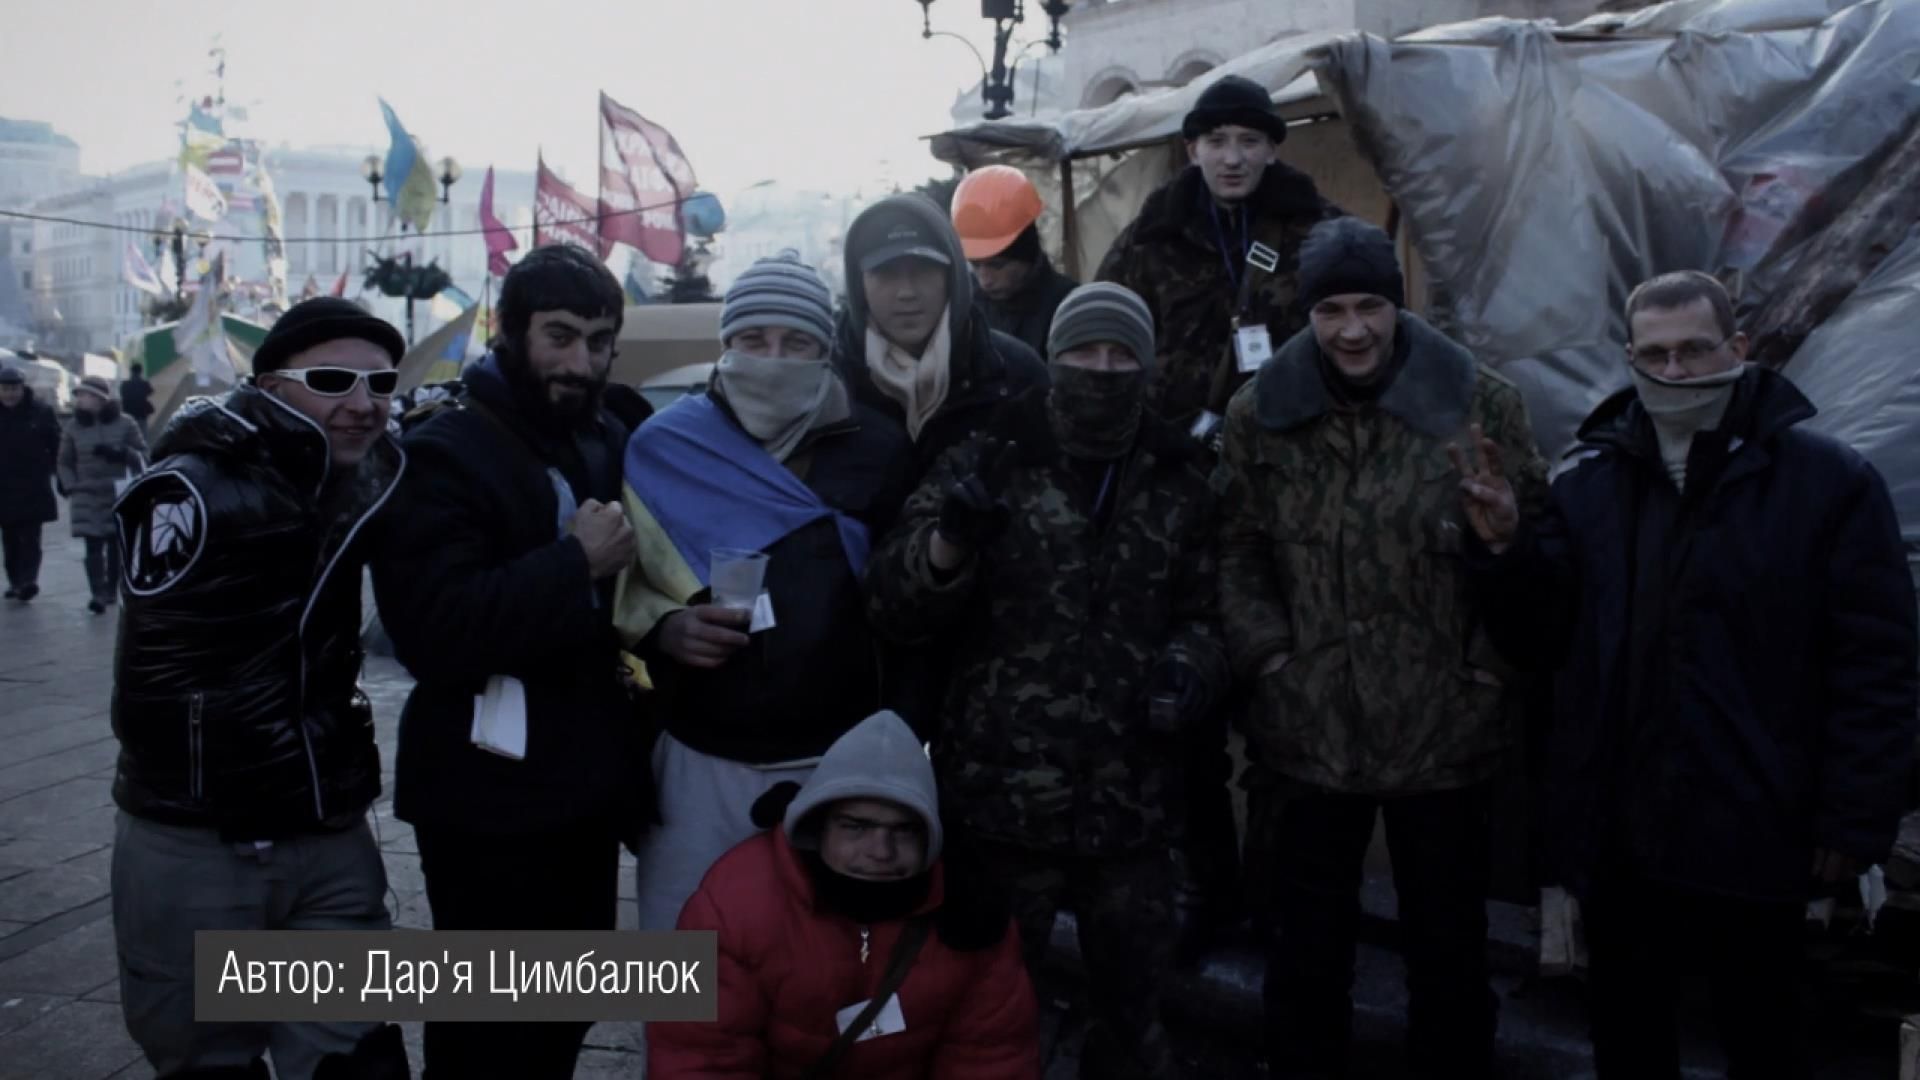 Мій Майдан. Підбірка фото і відео з Євромайдану, які ви ще не бачили - 21 лютого 2015 - Телеканал новин 24